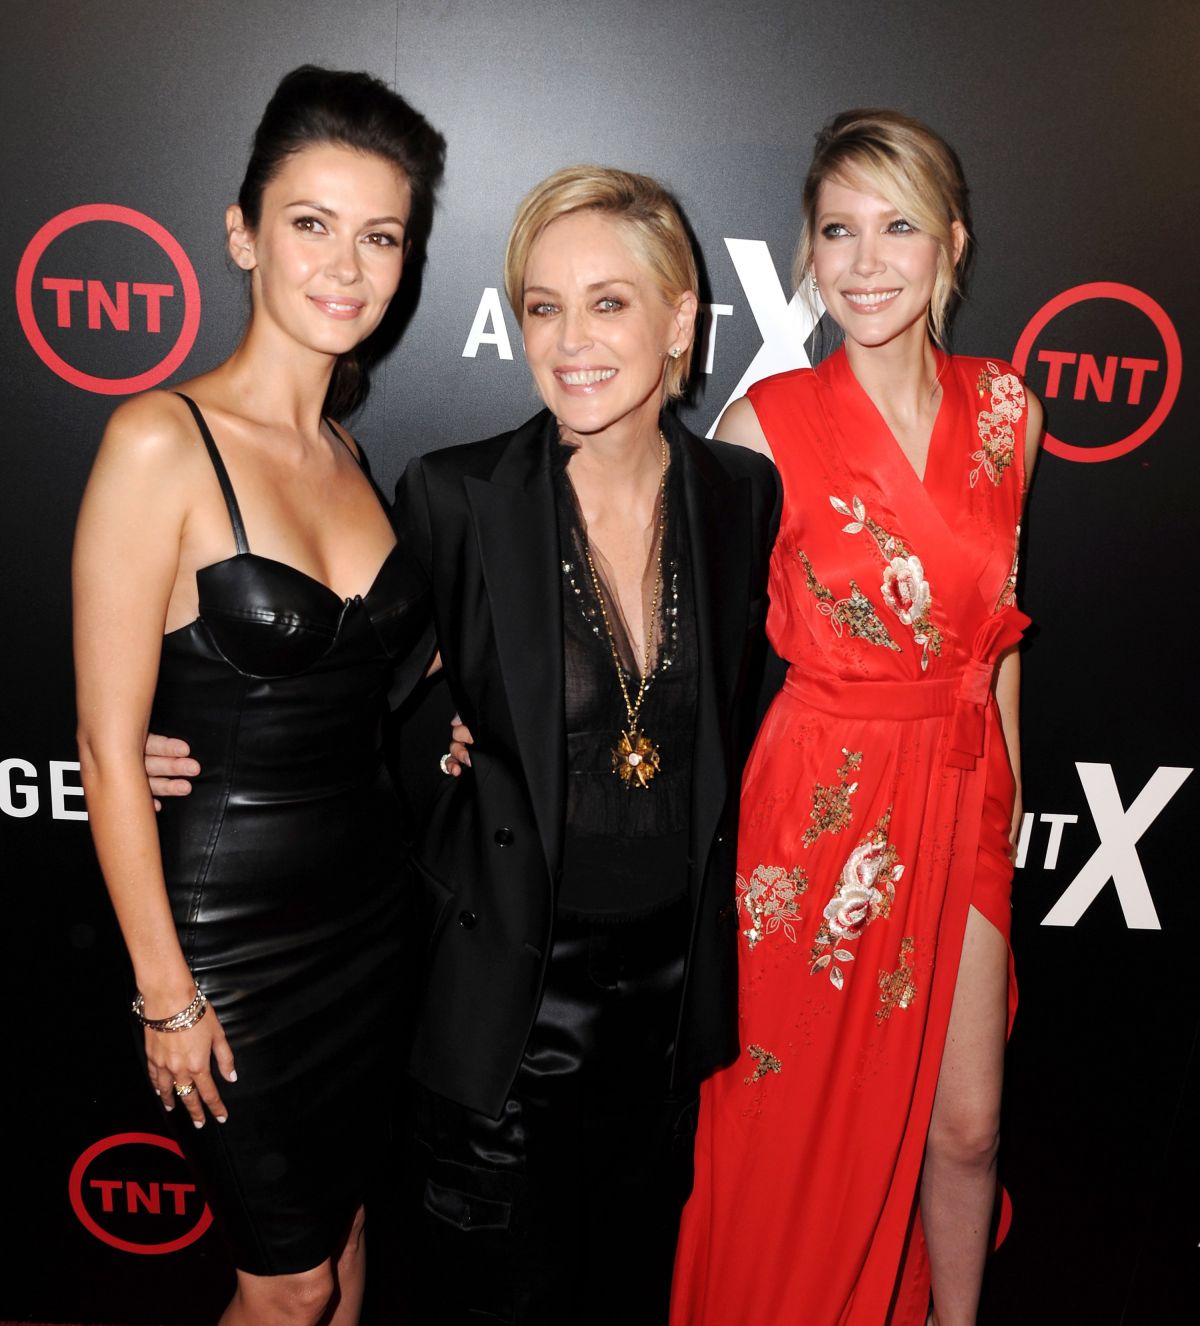 Olga Fonda attends the premiere of TNT’s Agent X